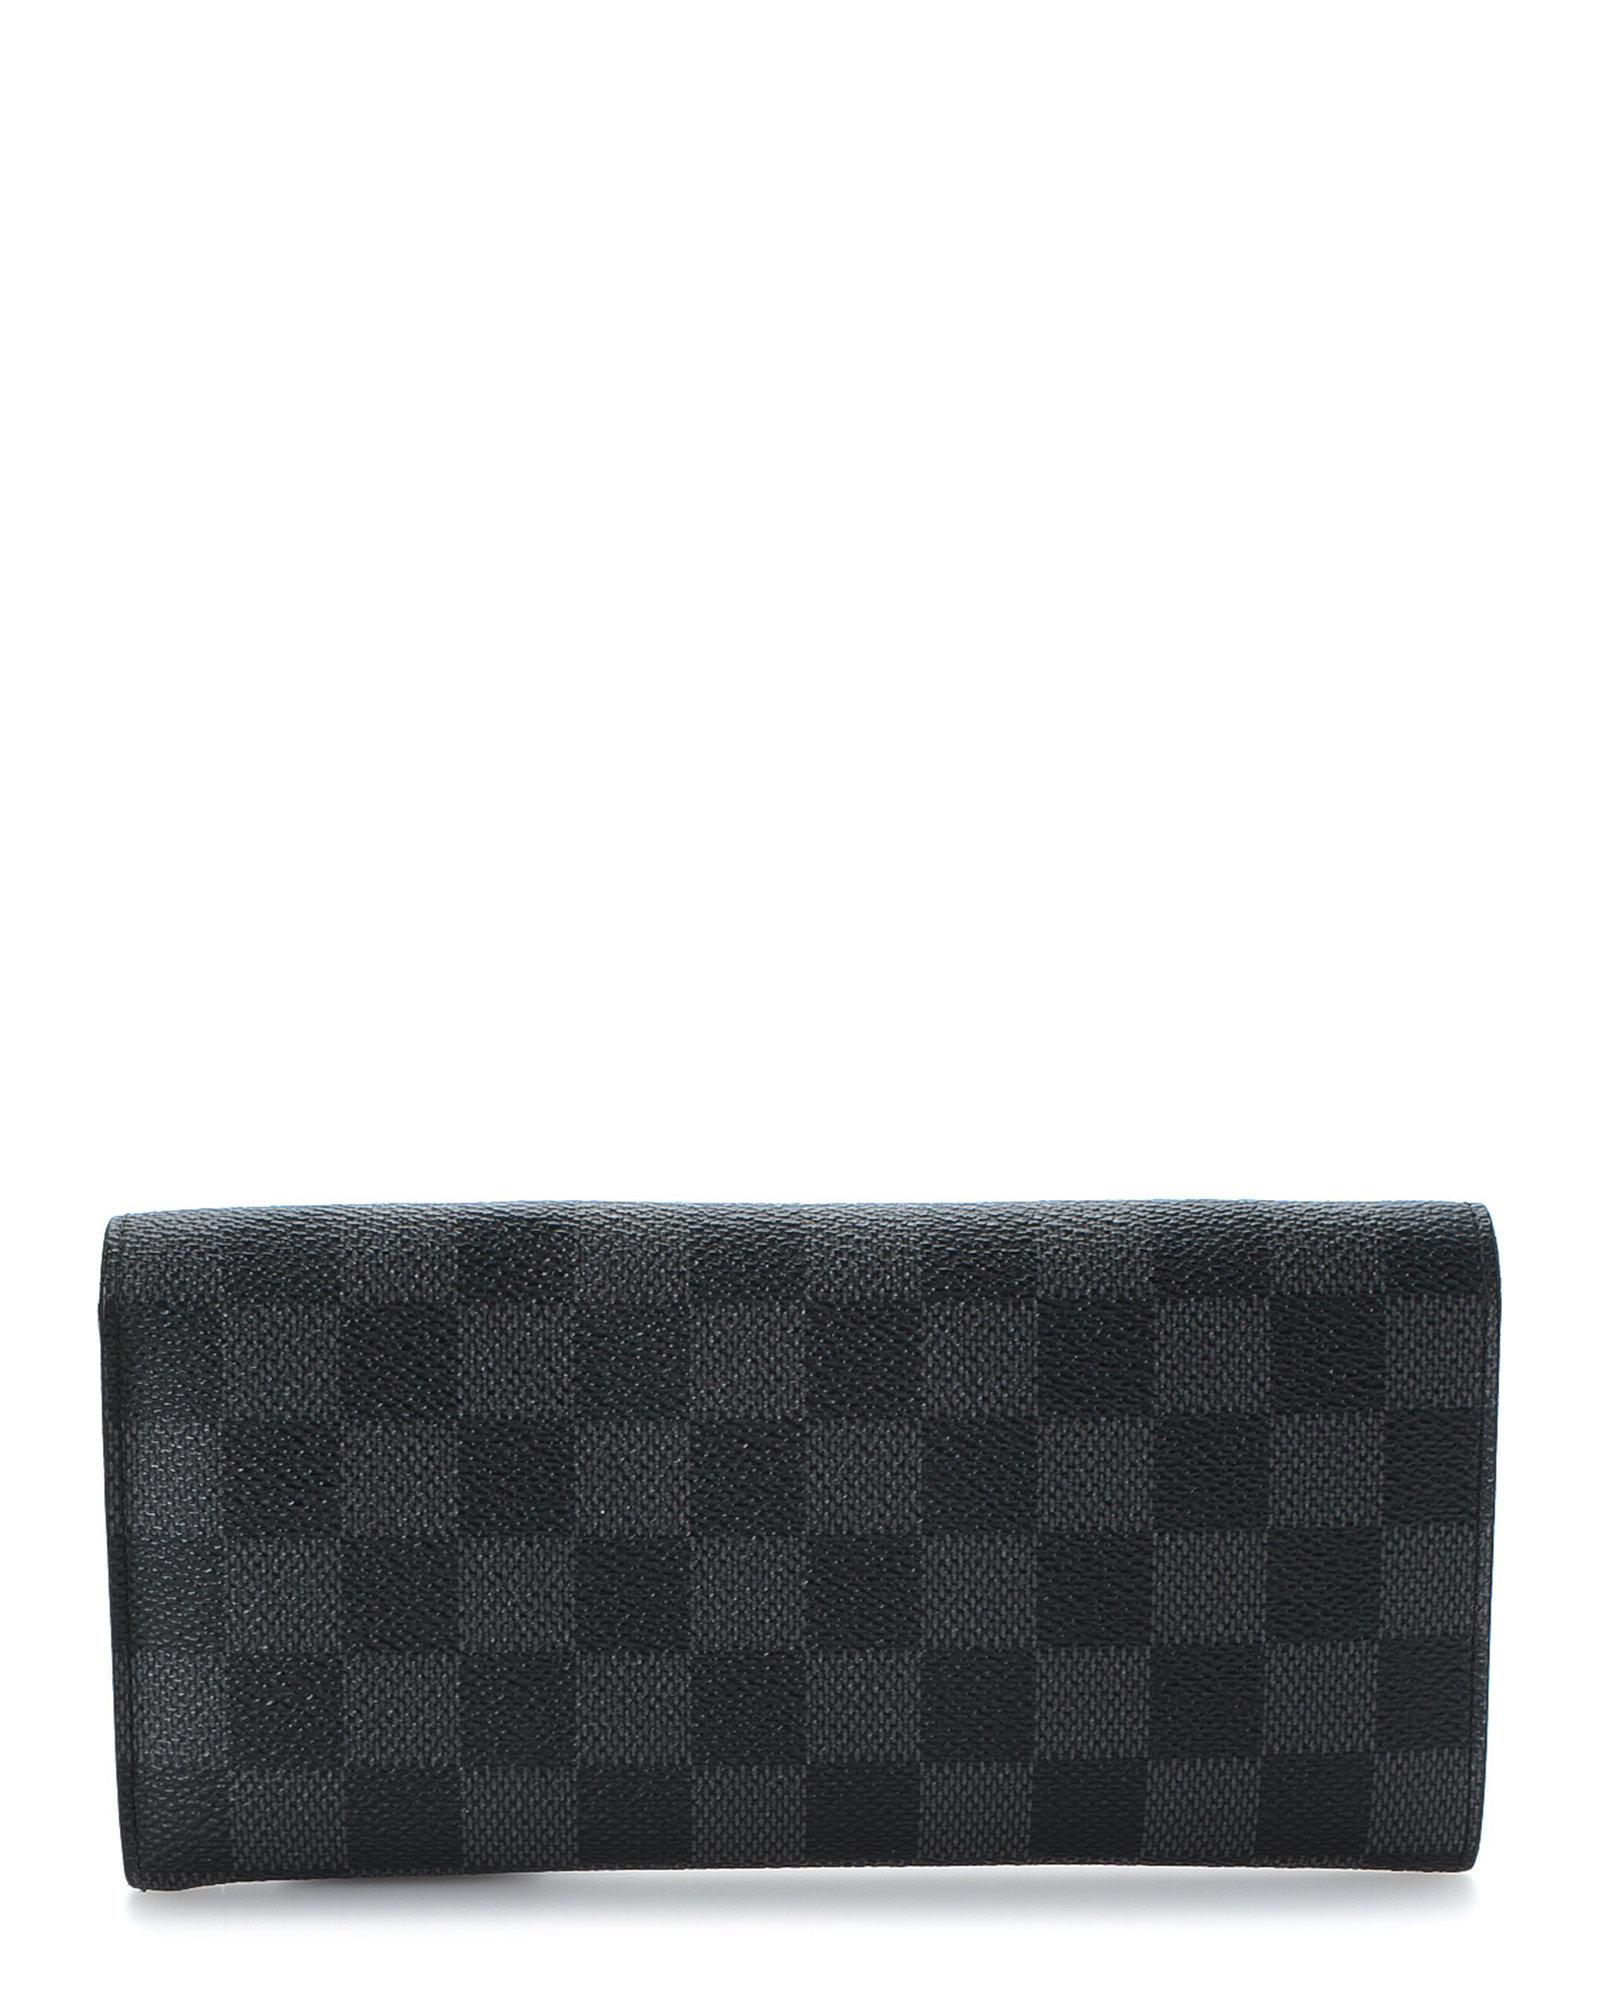 Lyst - Louis Vuitton Damier Graphite Portefeuille Long Modulable Wallet - Vintage in Black